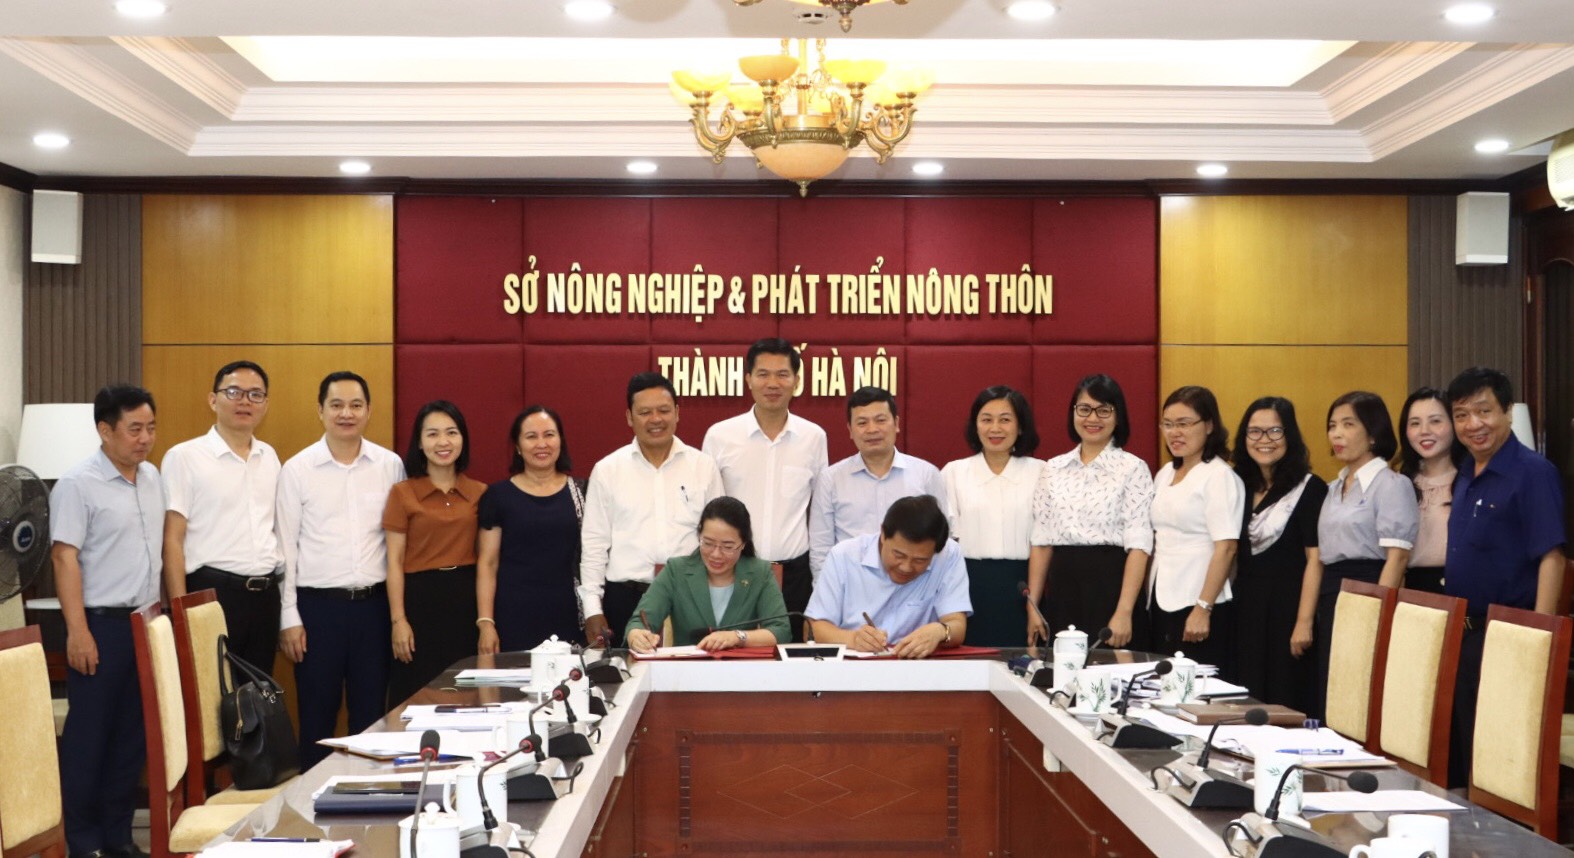 Sở Nông nghiệp & PTNT Hà Nội - Hội nông dân Thành phố ký kết kế hoạch công tác năm 2024